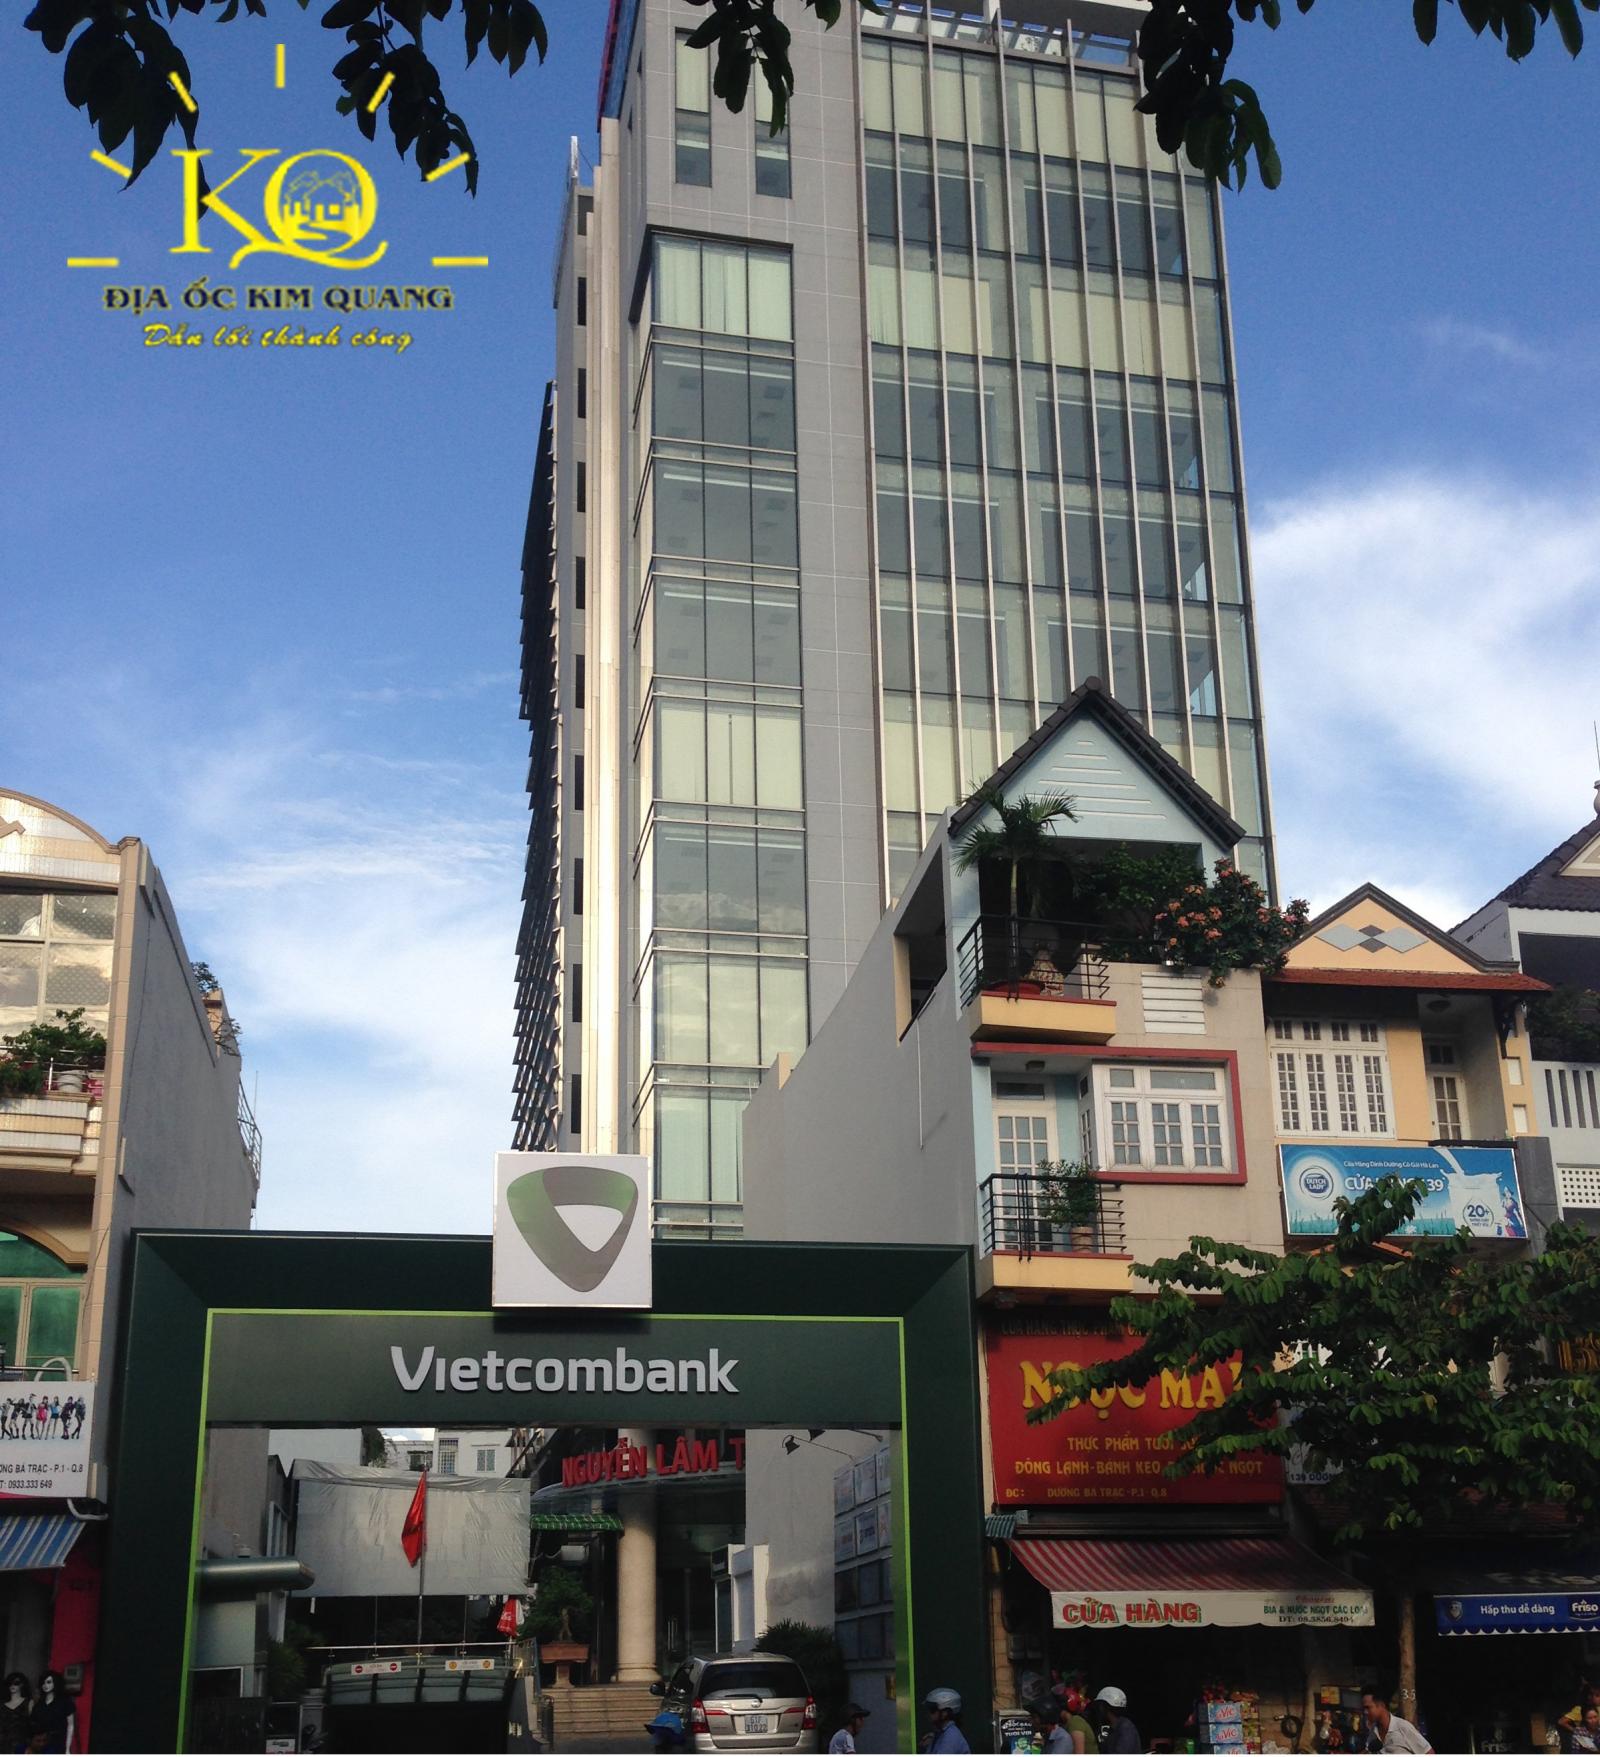 Cho thuê văn phòng quận 8 Nguyễn Lâm Tower giá thuê văn phòng từ 515 nghìn/m2, liên hệ ngay